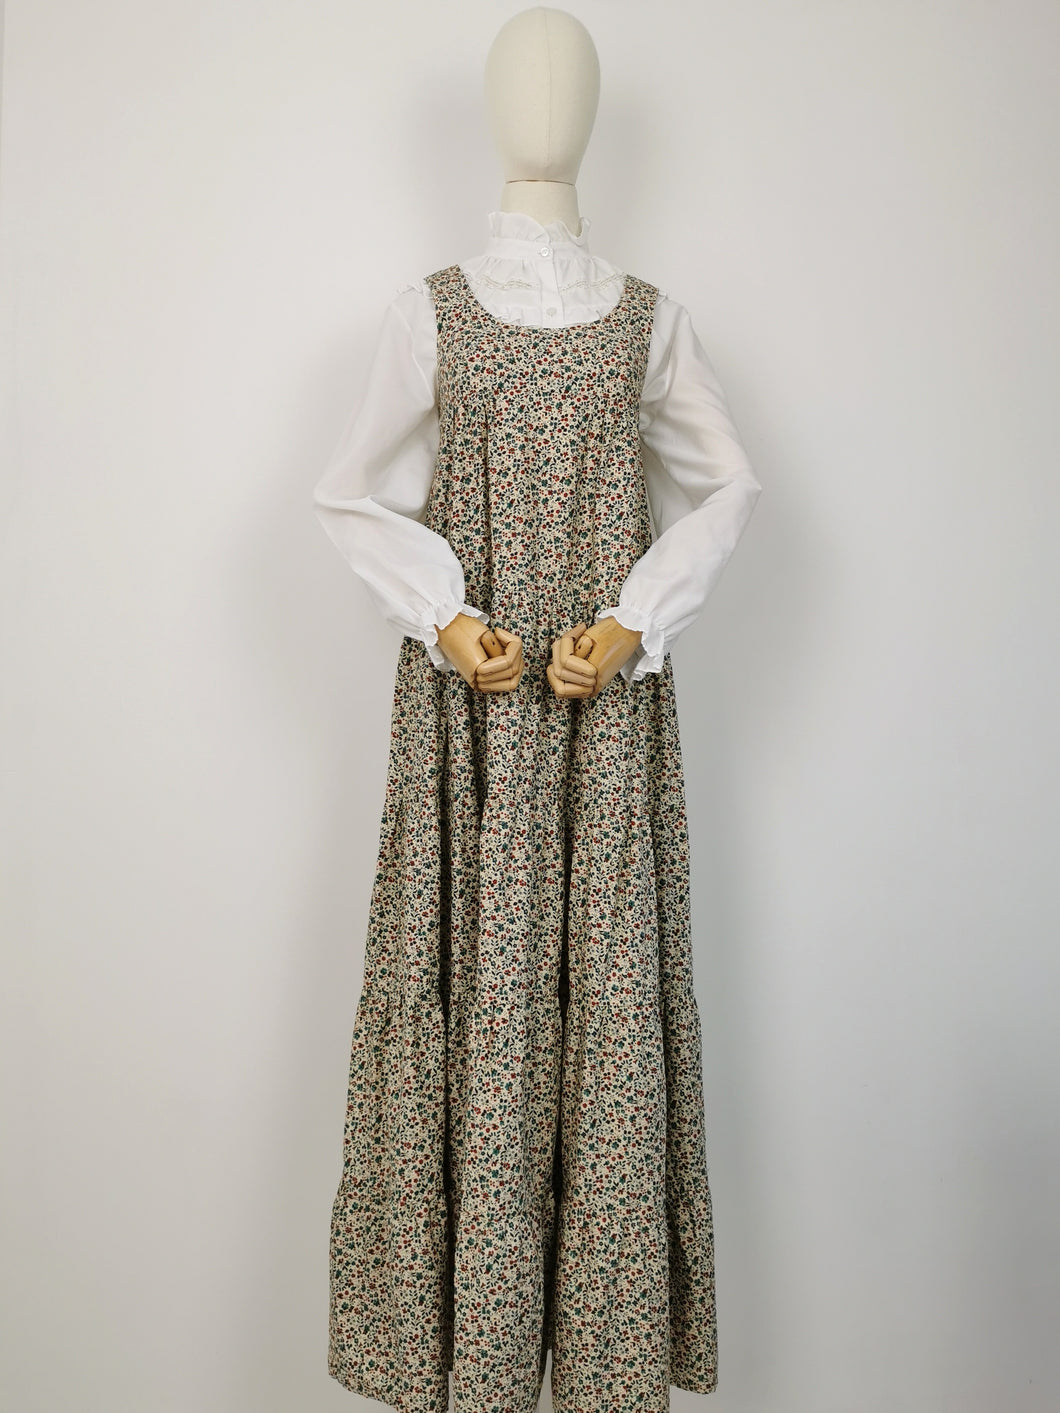 Vintage 70s empire waist prairie dress